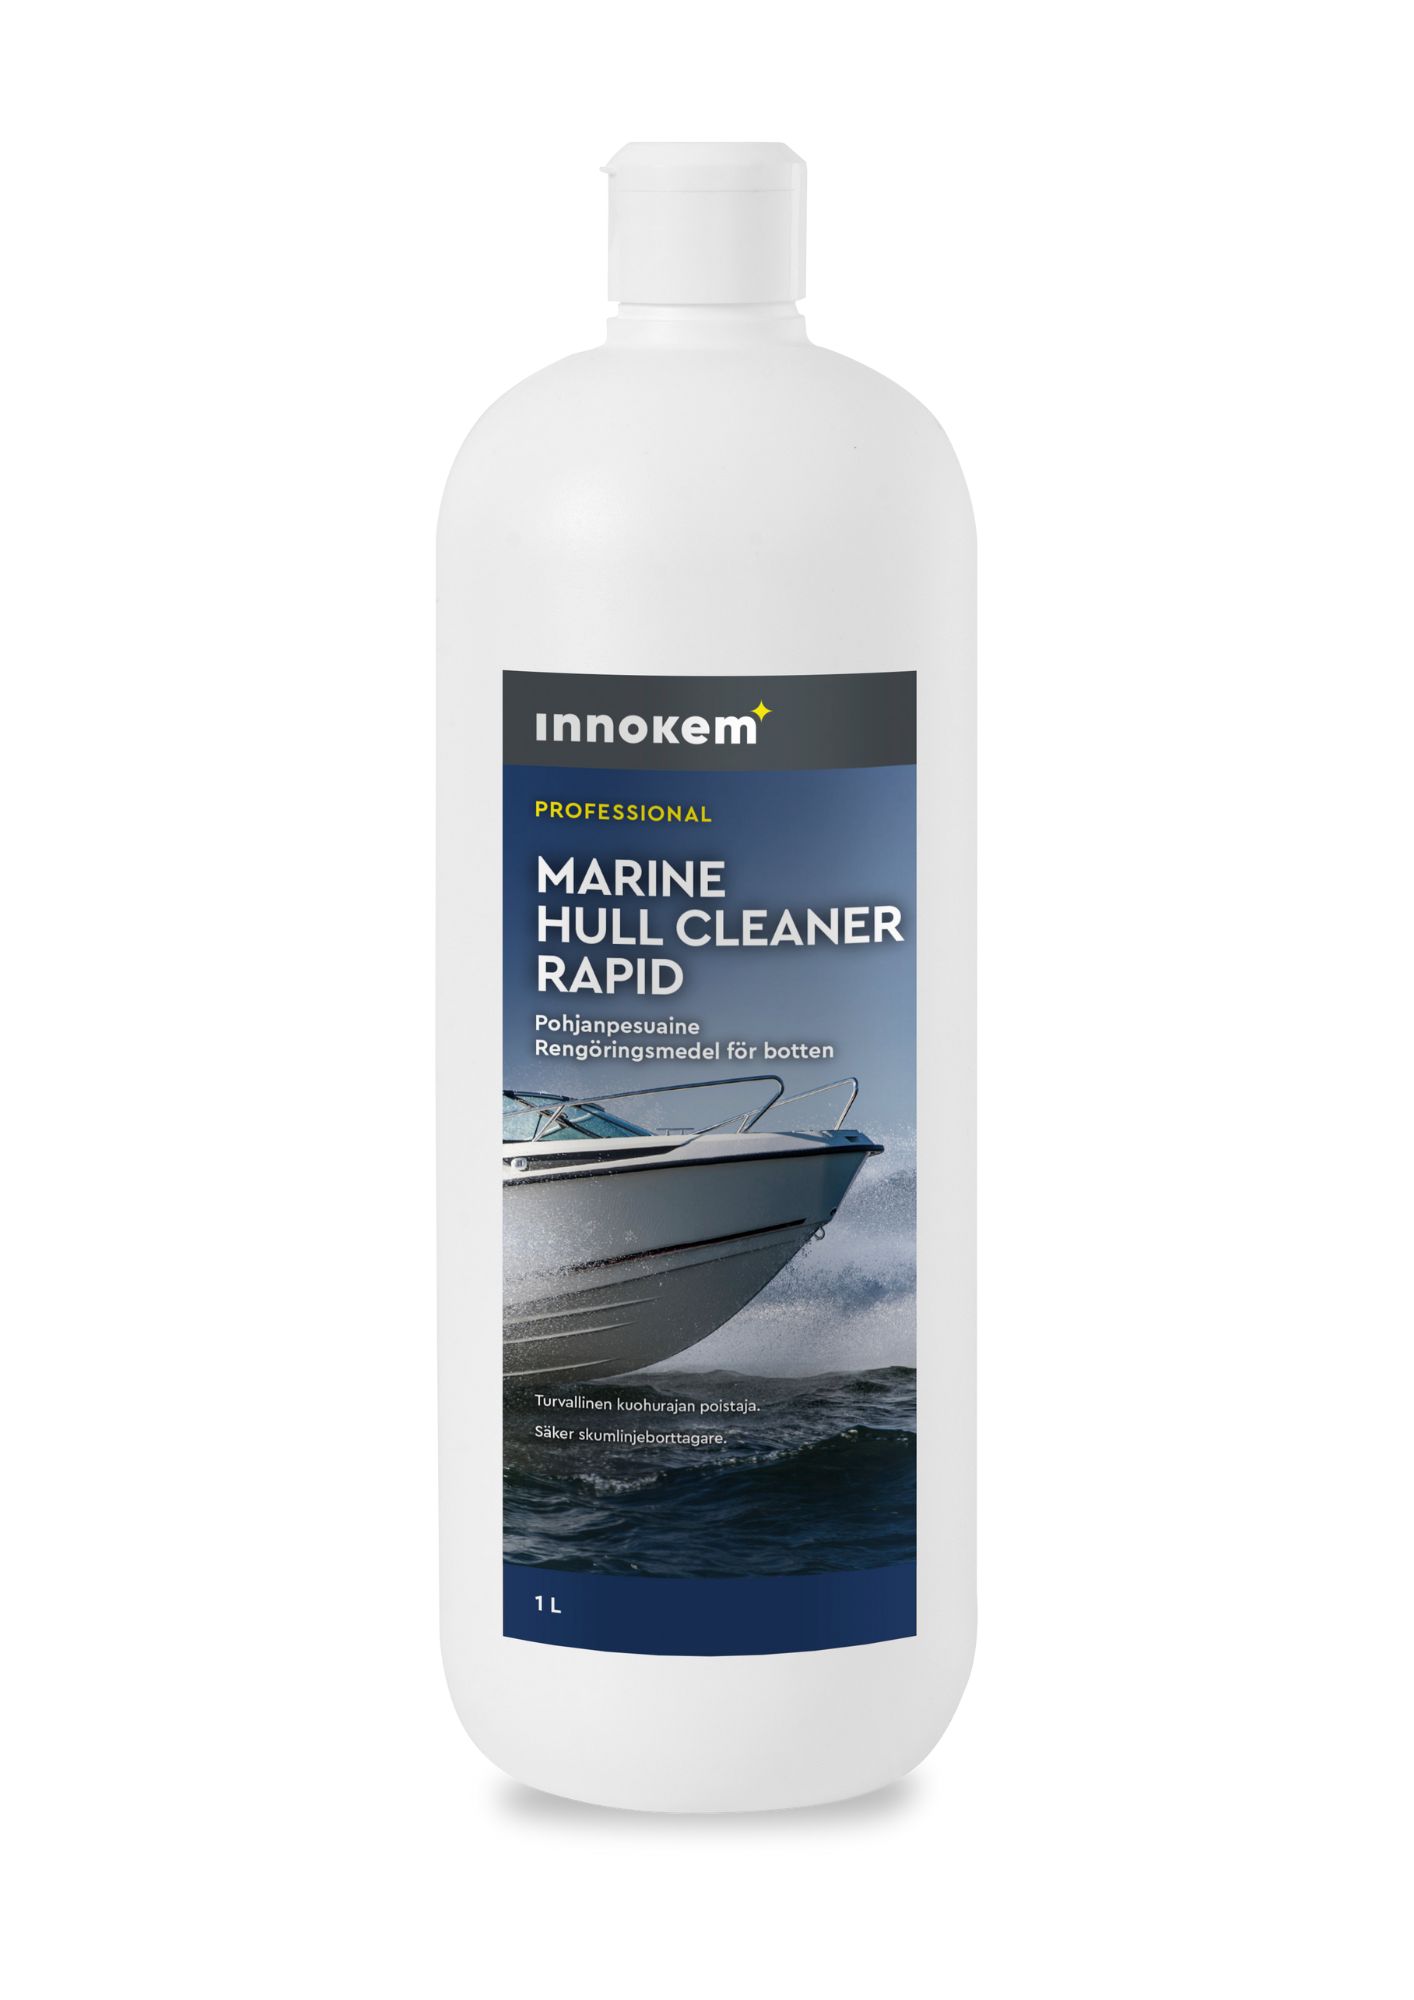 innokem marine hull cleaner rapid pohjanpesuaine